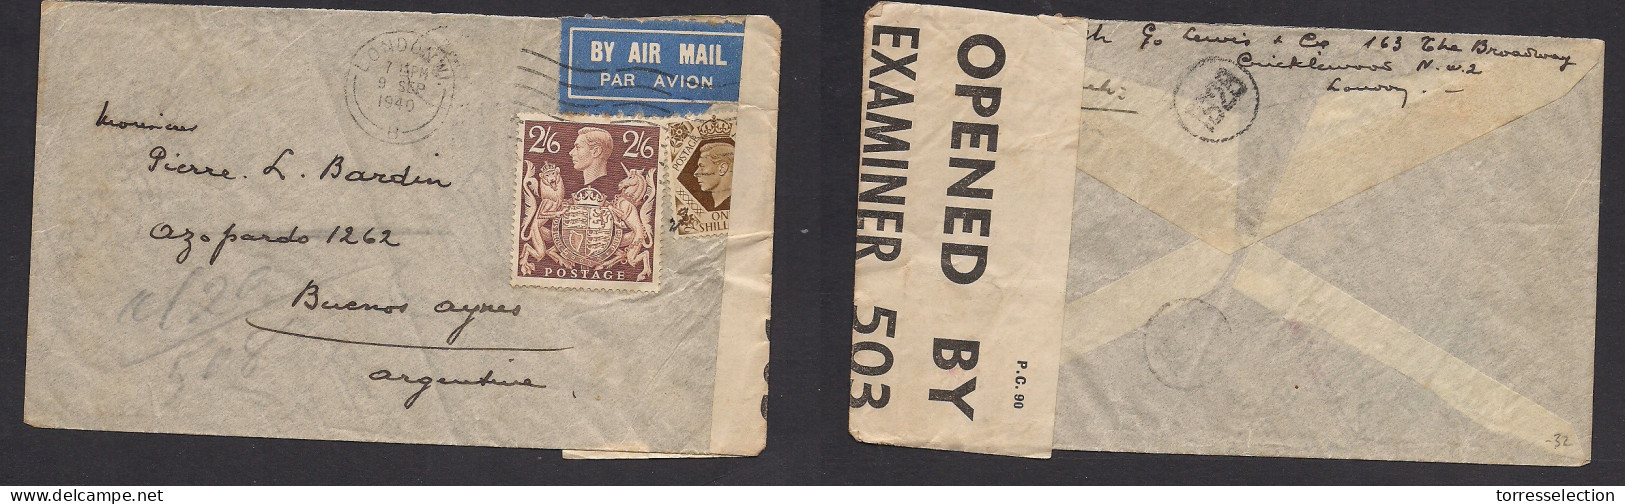 Great Britain - XX. 1940 (6 Sept) London - Argentina, Buenos Aires. Air Multifkd Env Incl 2/6sh. 3sh 6d Rate + Censored. - ...-1840 Préphilatélie